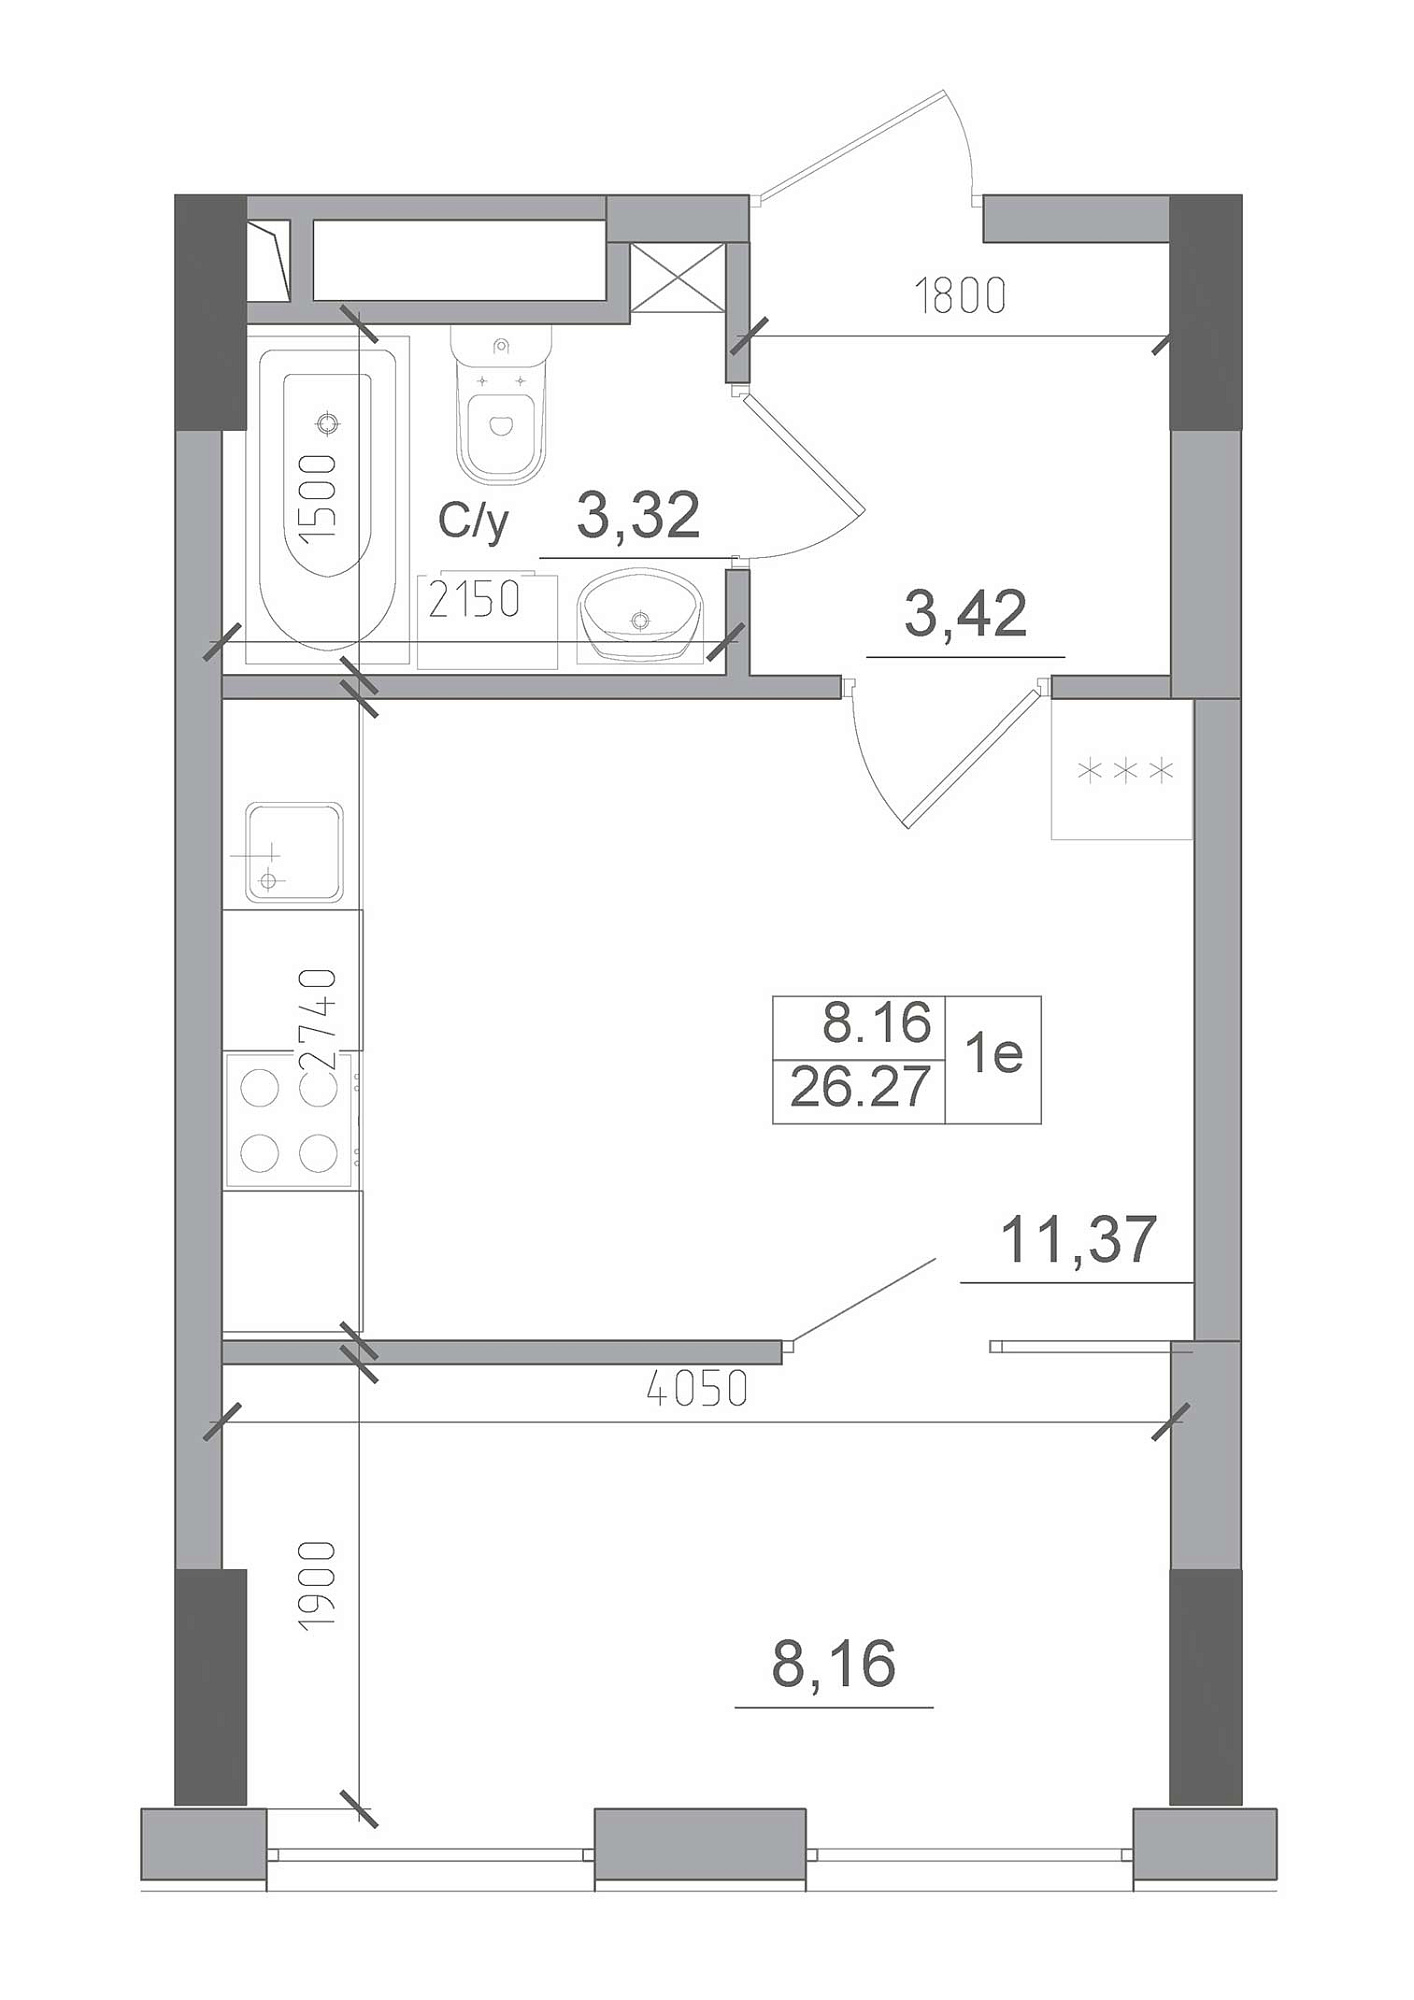 Планировка 1-к квартира площей 26.27м2, AB-22-10/00009.